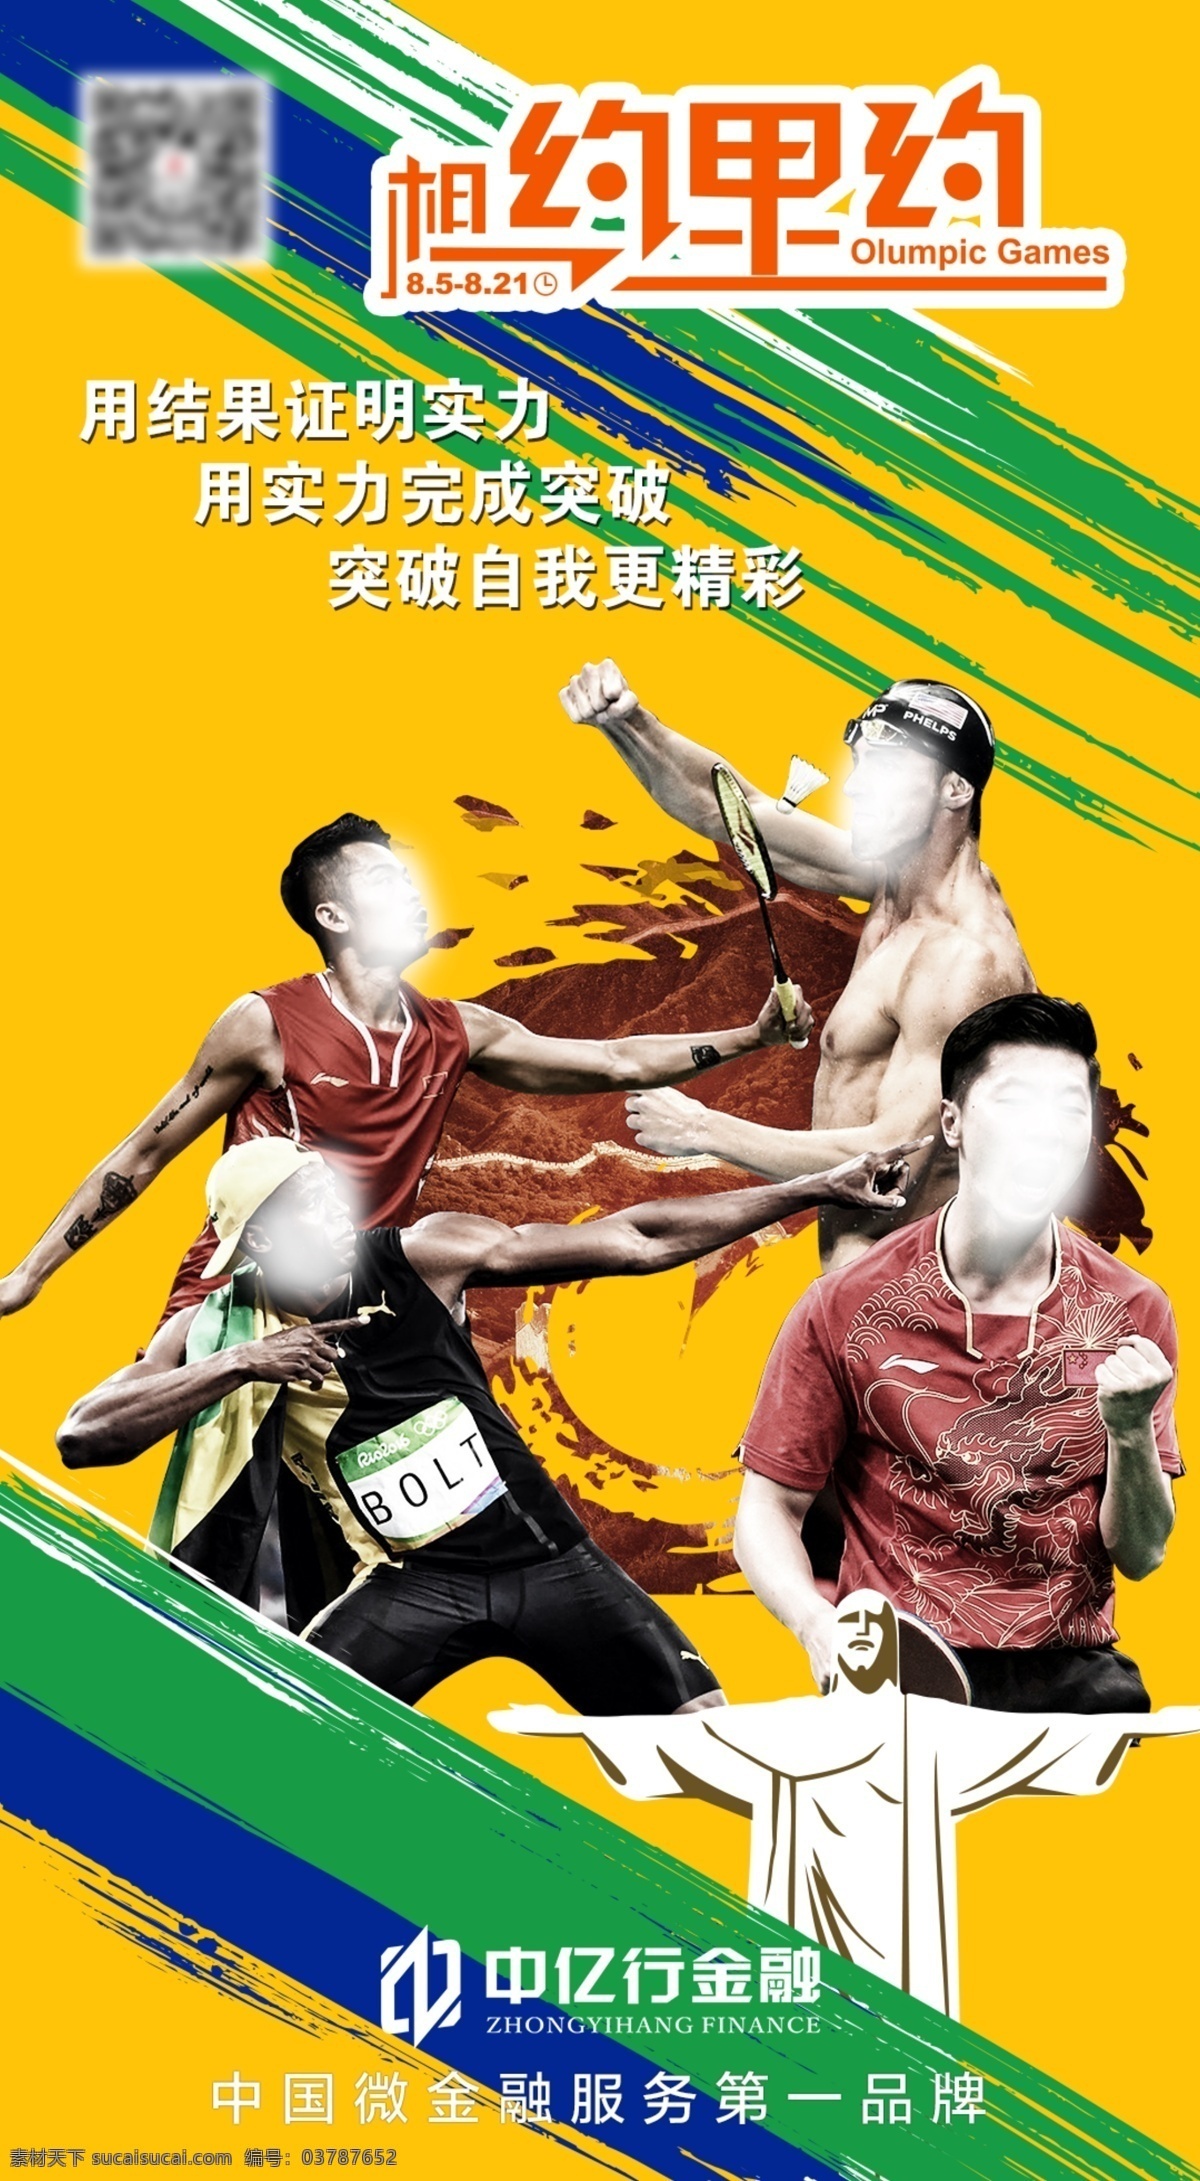 奥运 图文 金融 宣传海报 里约 体育人物 耶稣像 漆 相约 黄色